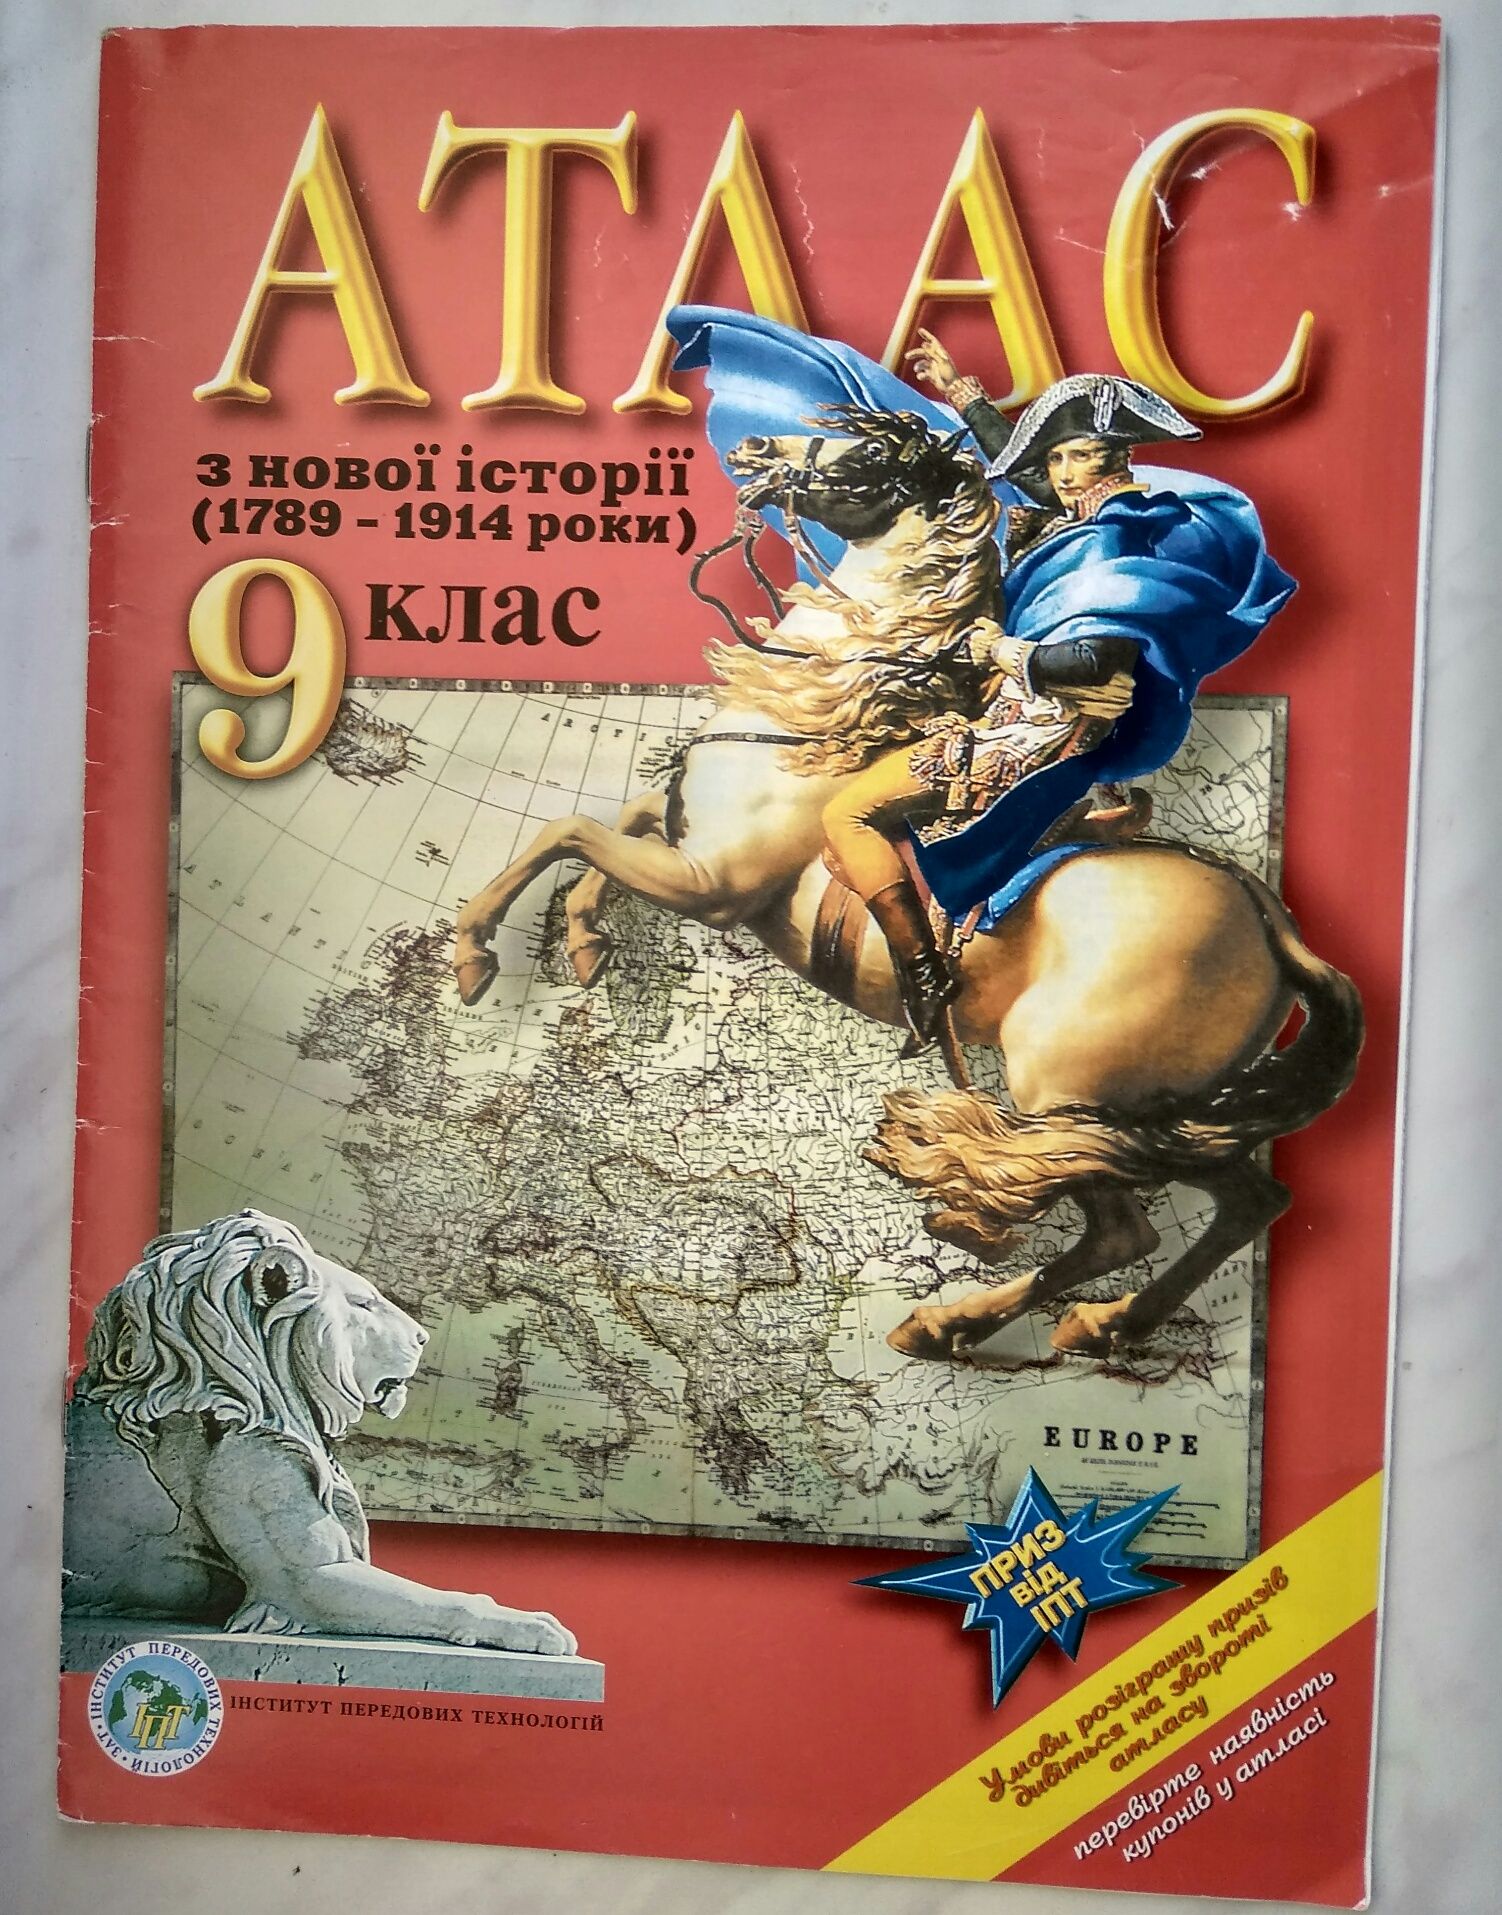 Атлас з нової історії (1789-1914), 9 клас. Школьные карты